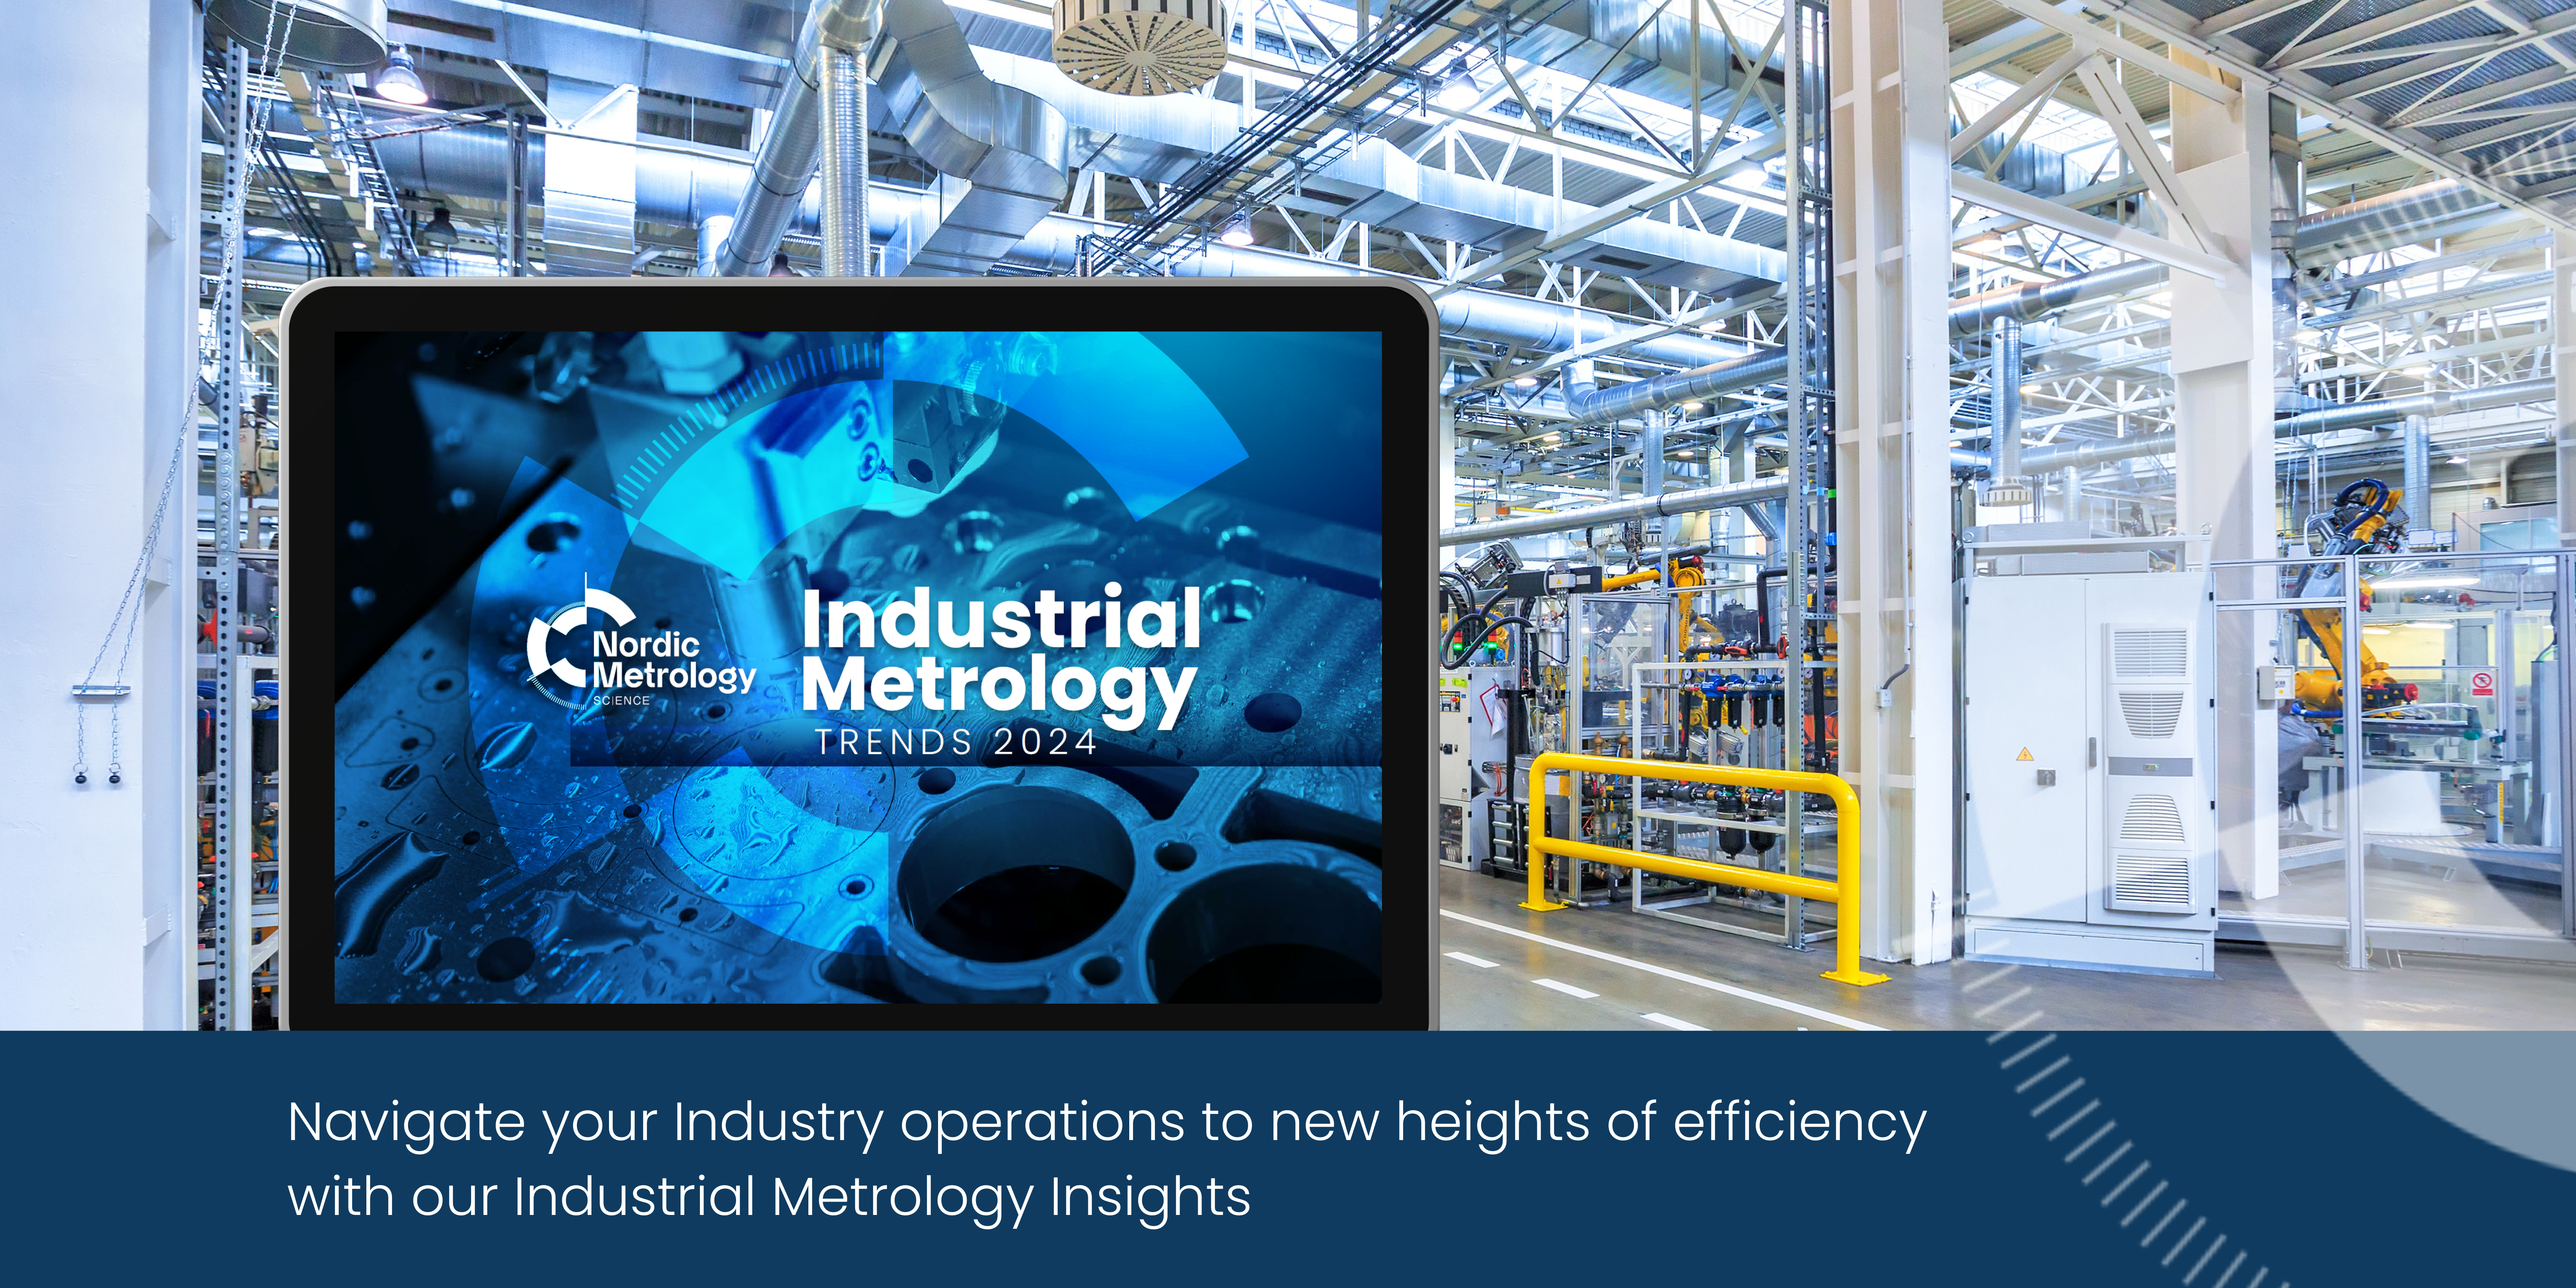 Industrial Metrology trends 2024 report